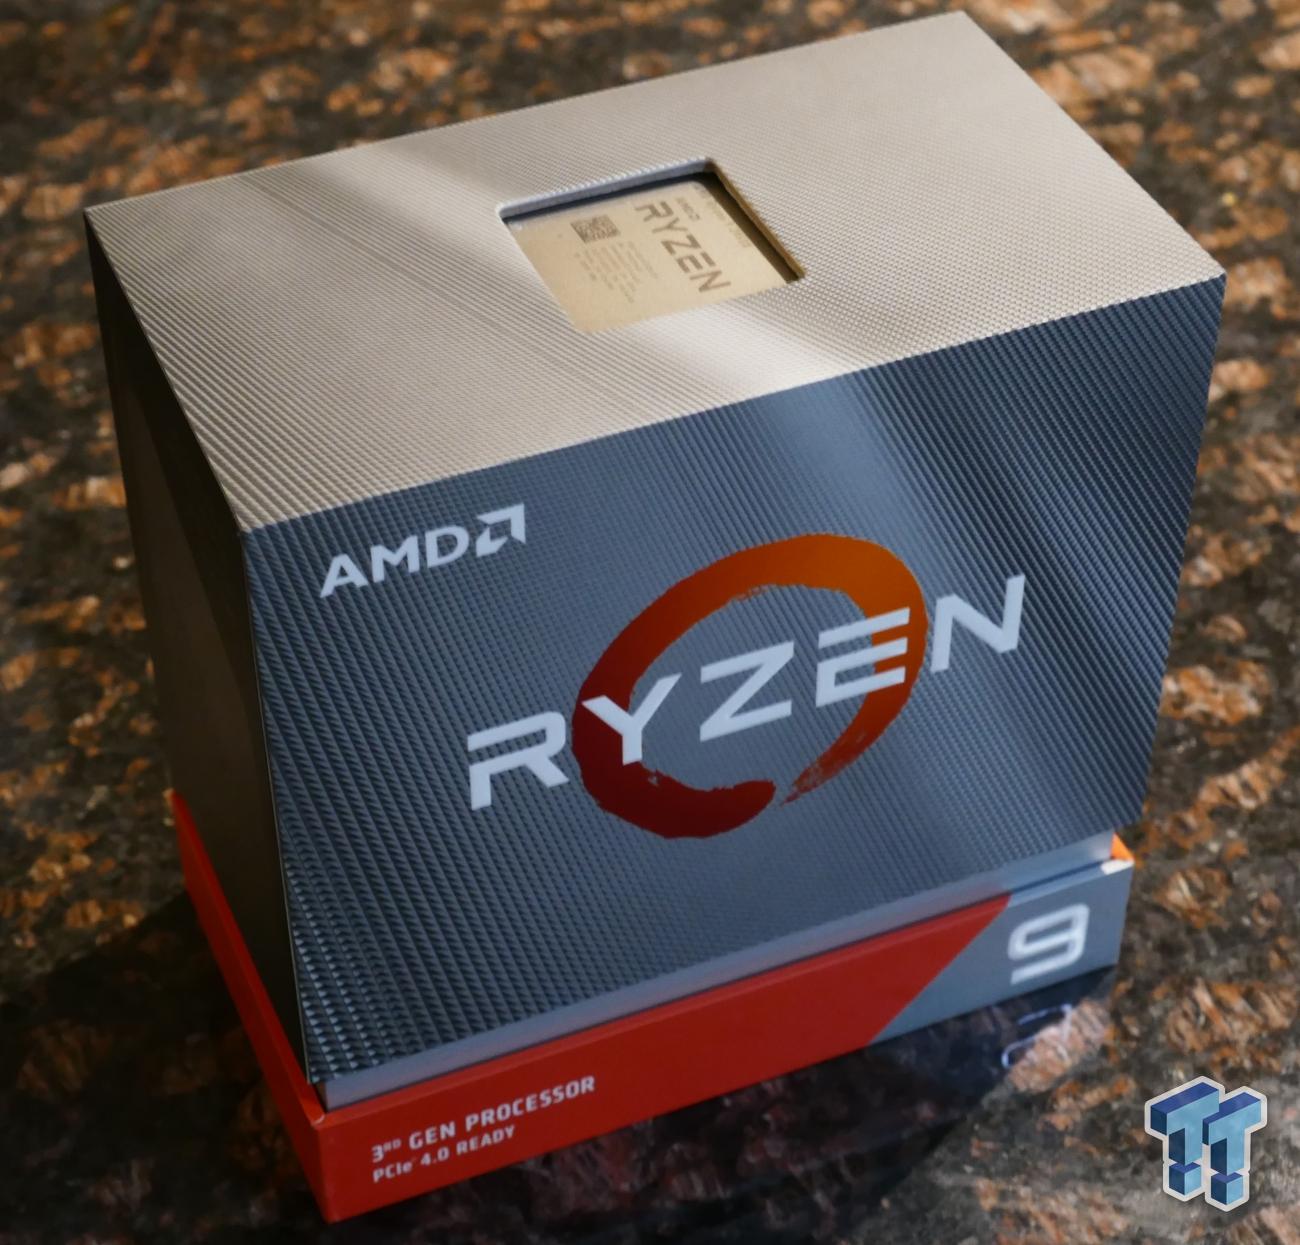 AMD Ryzen 9 3950X (Zen 2) Processor Review